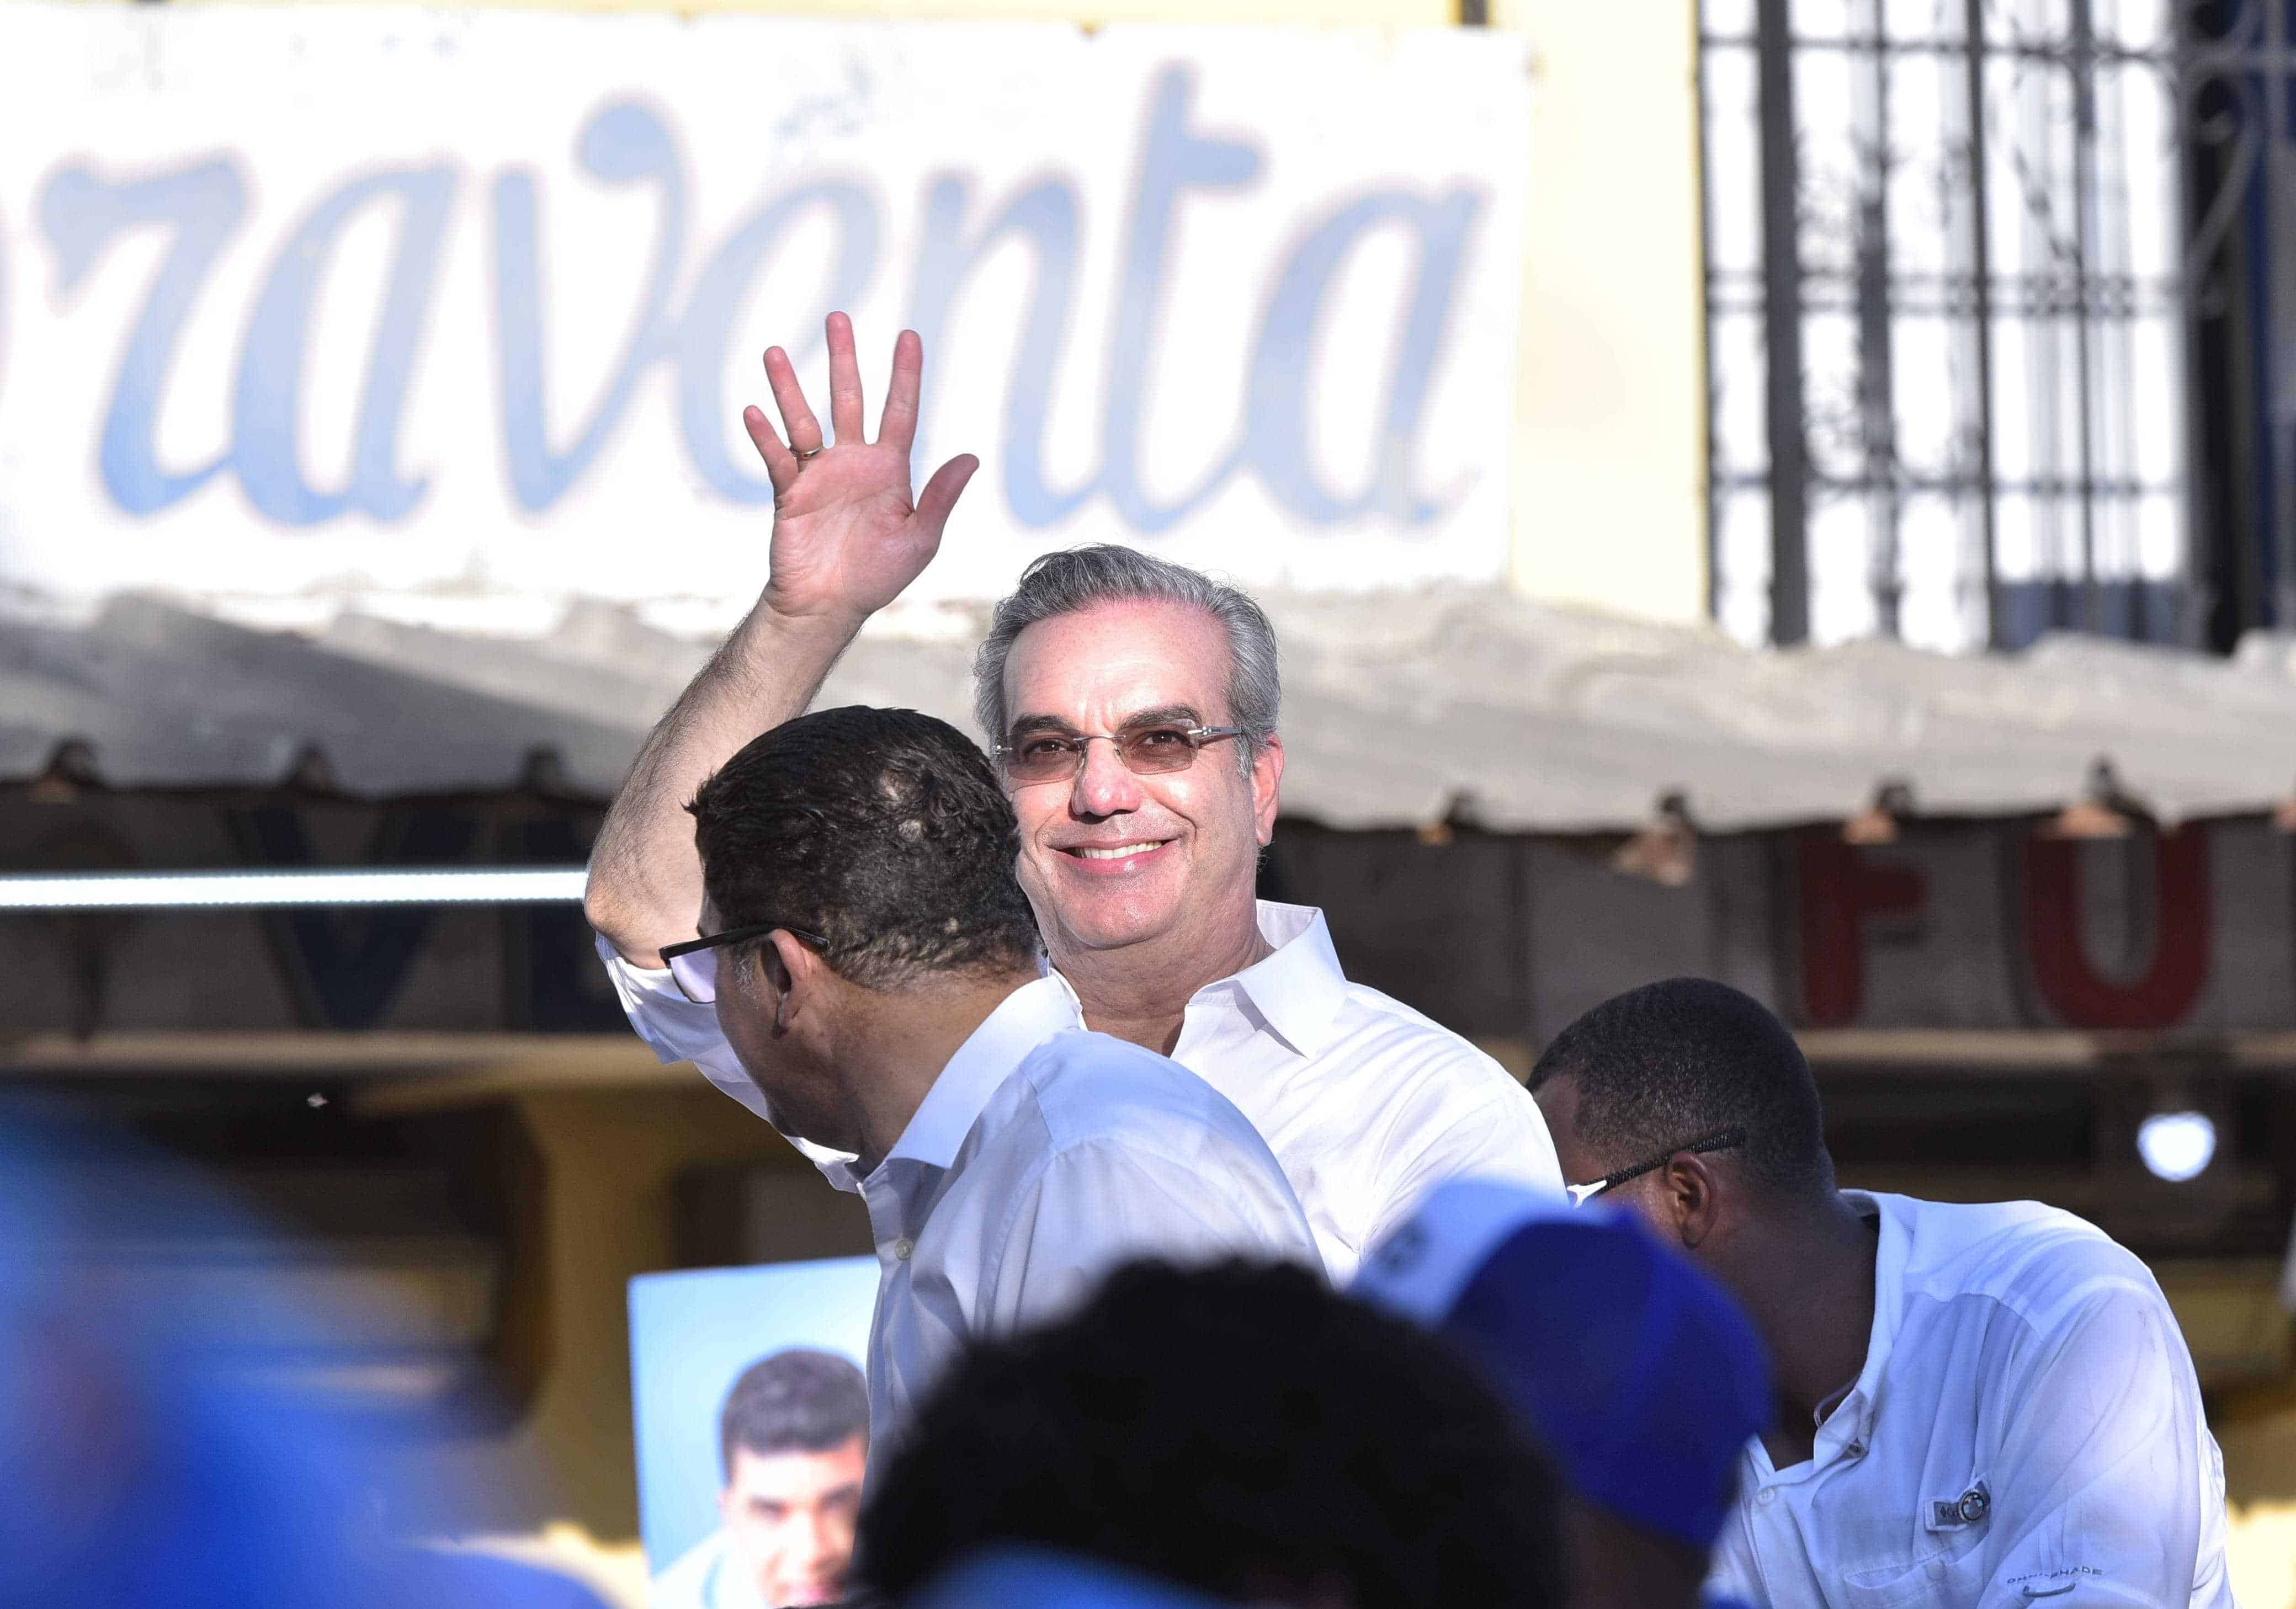 El presidente Luis Abinader sonriente durante el recorrido.